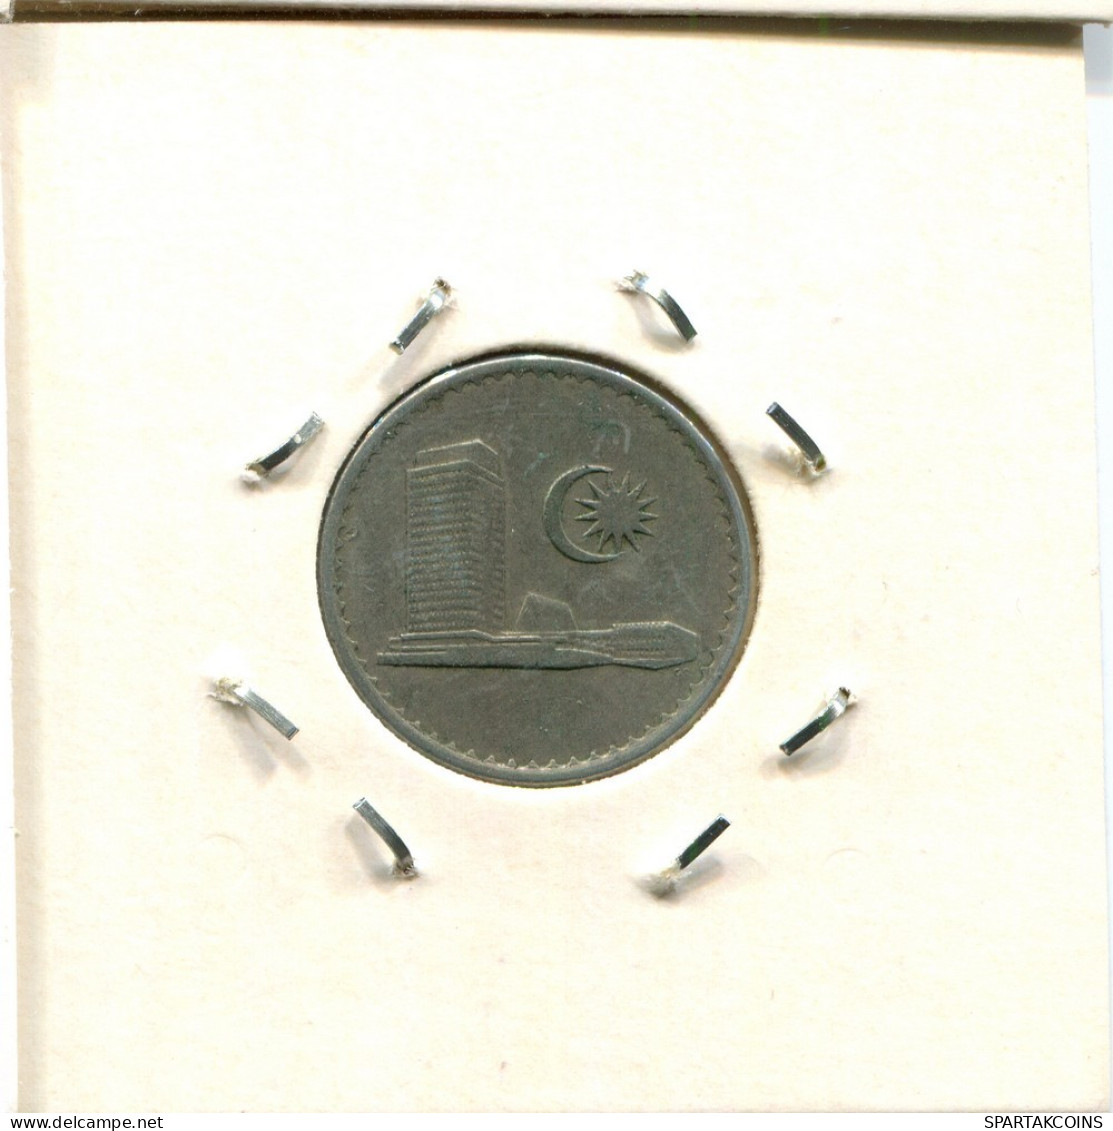 10 SEN 1967 MALASIA MALAYSIA Moneda #BA118.E.A - Maleisië